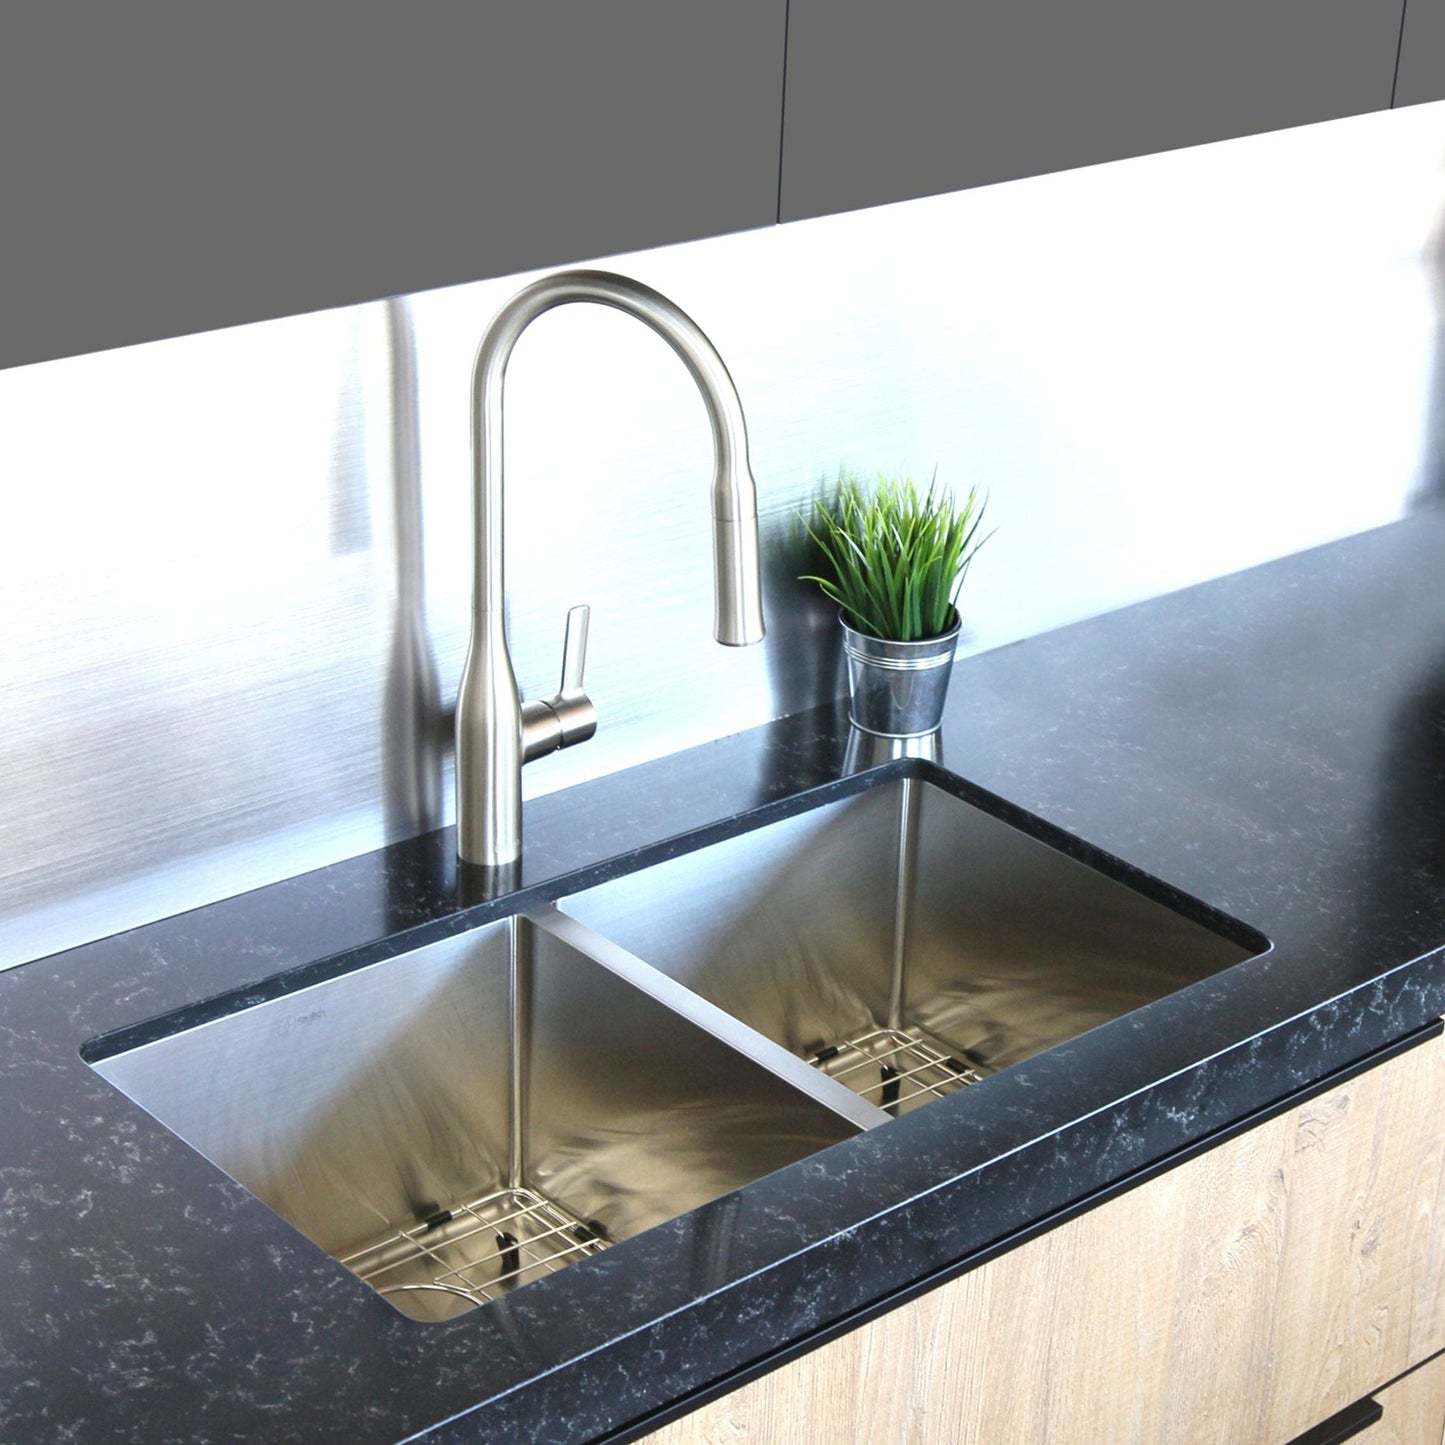 Stylish Zircon 32" x 18" Double Bowl Undermount Stainless Steel Kitchen Sink S-301XG